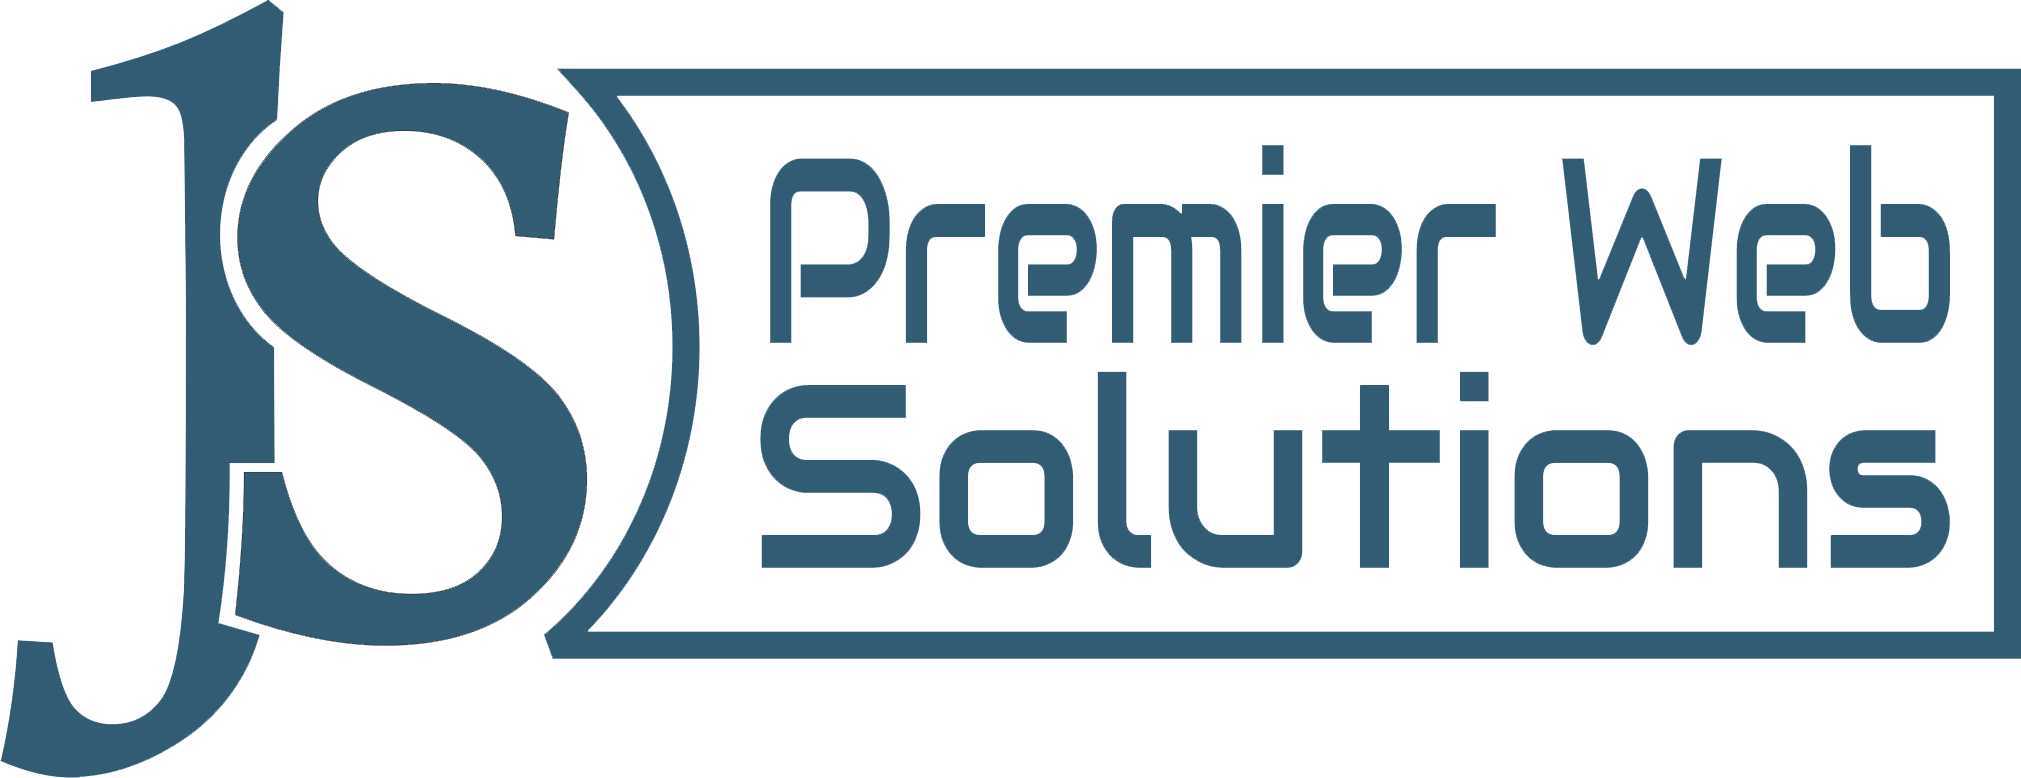 JS Premier Web Solutions